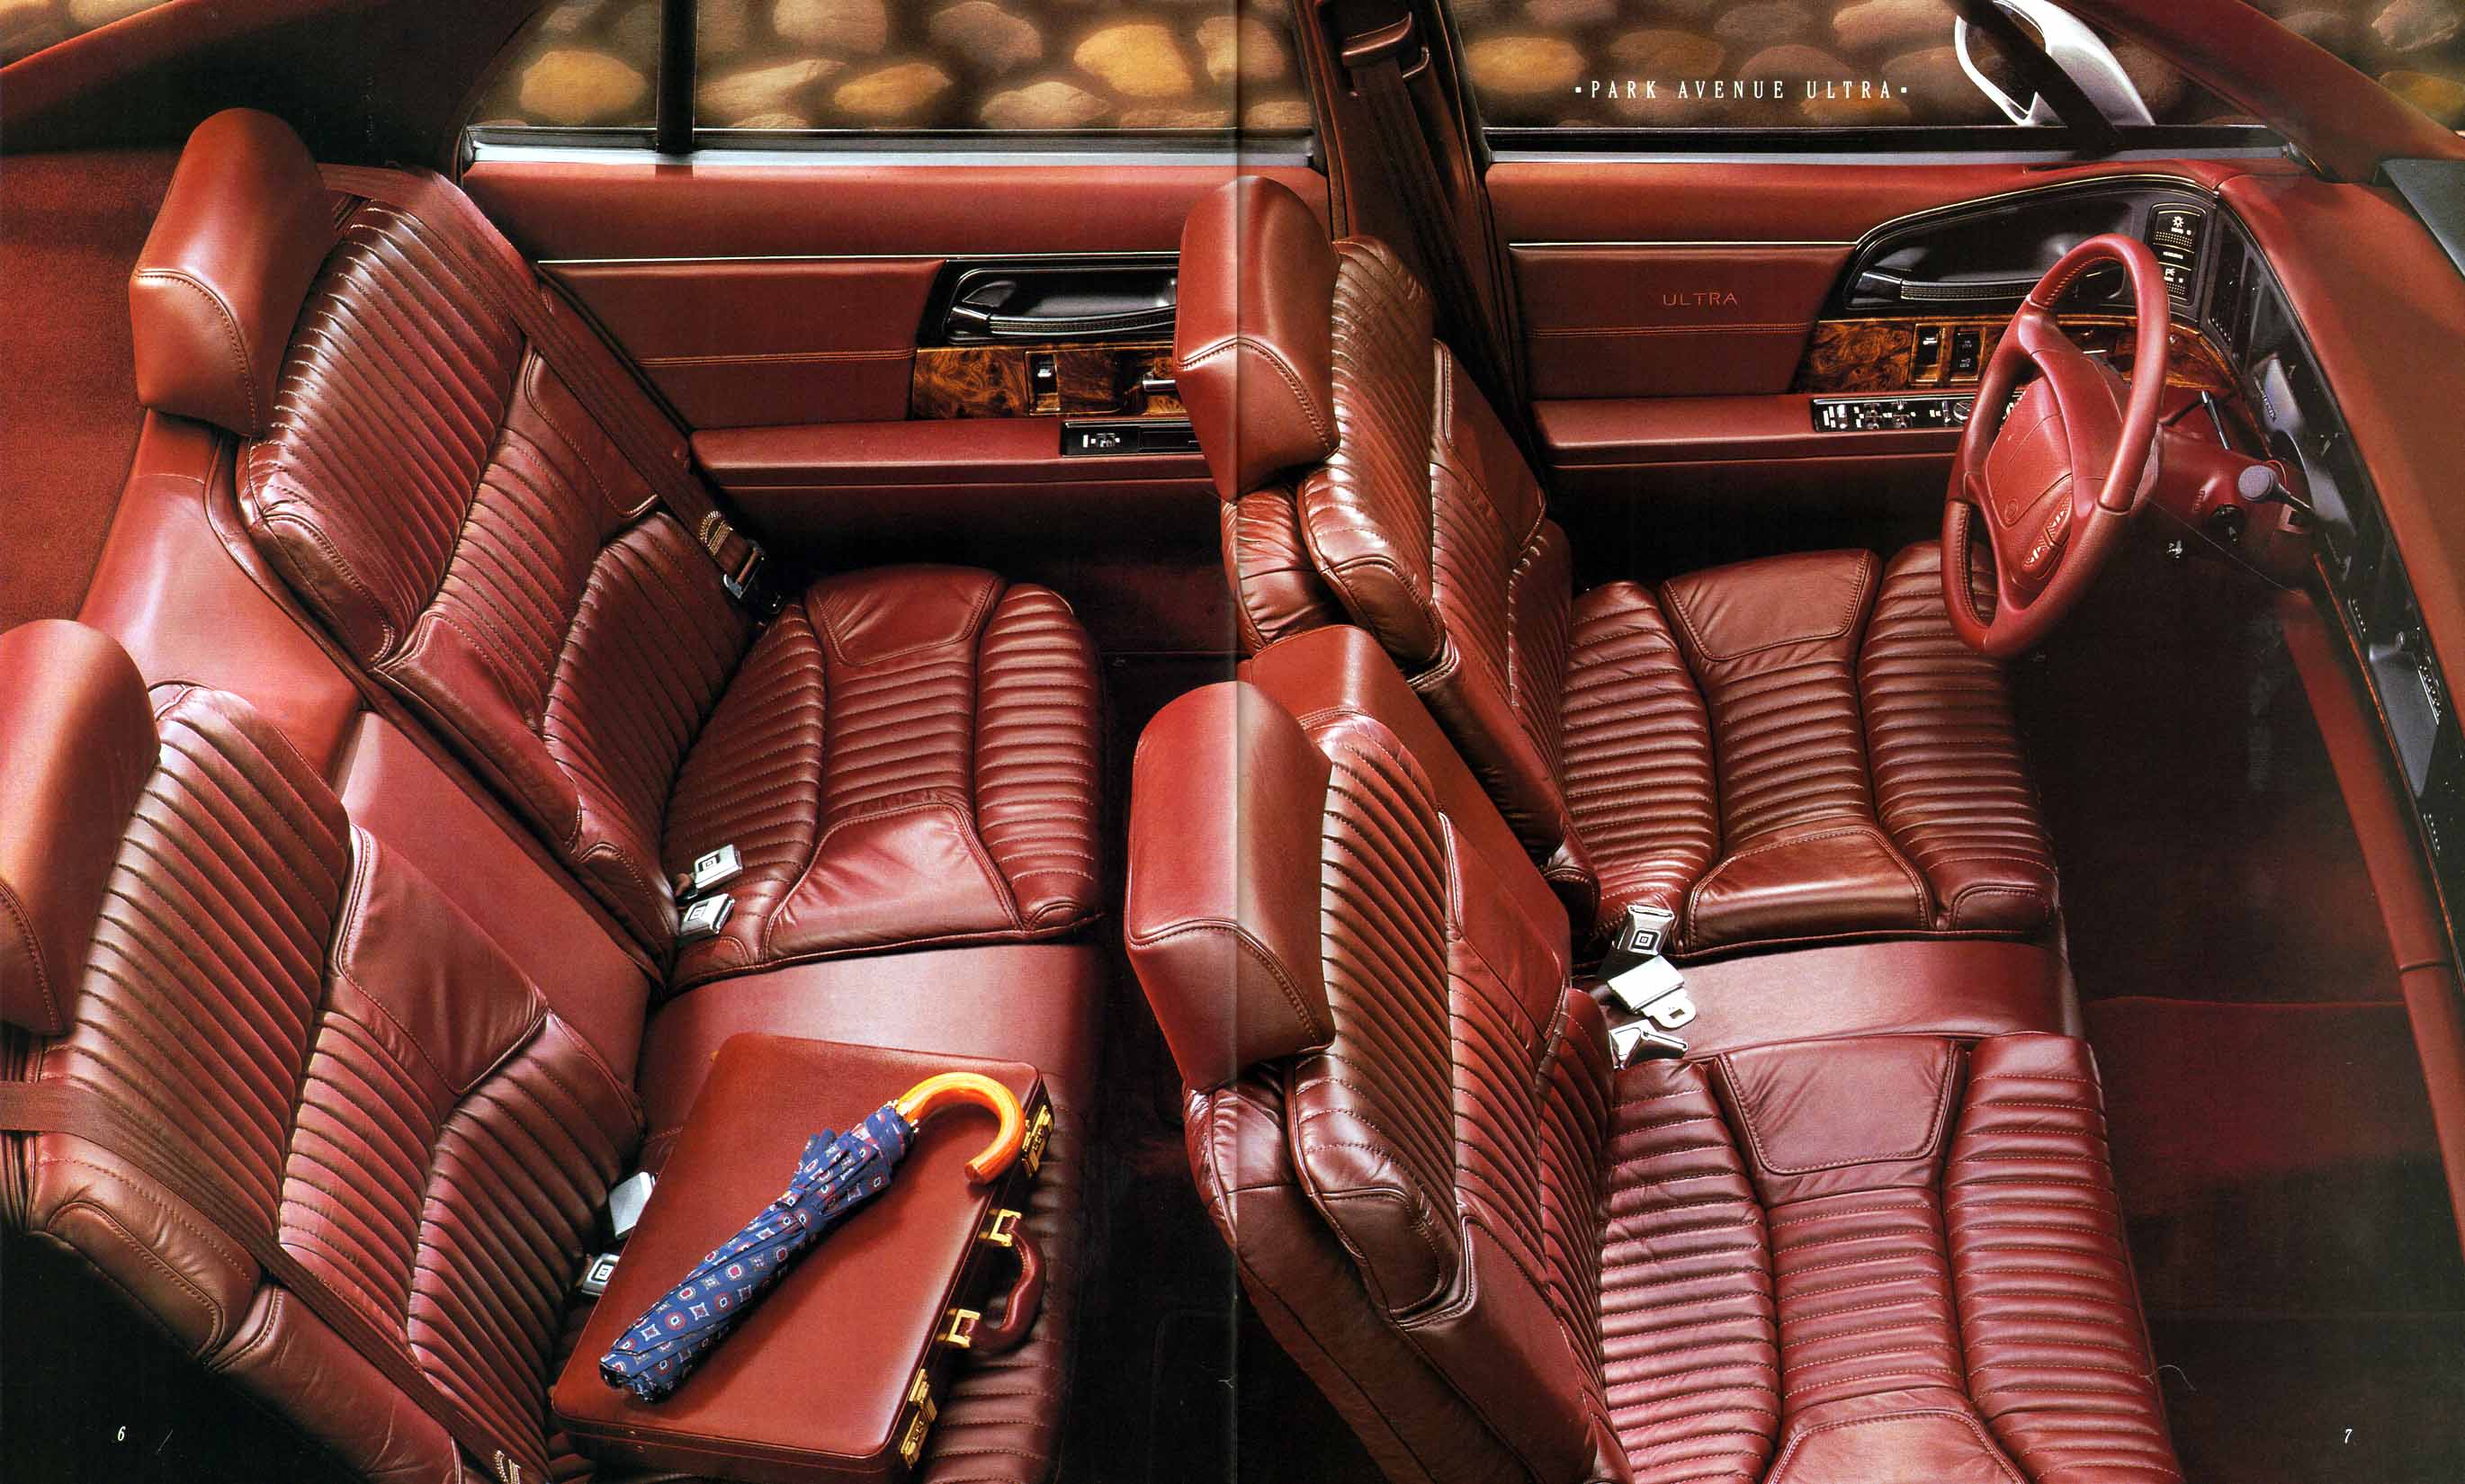 1994 Buick Full Line Prestige-08-09